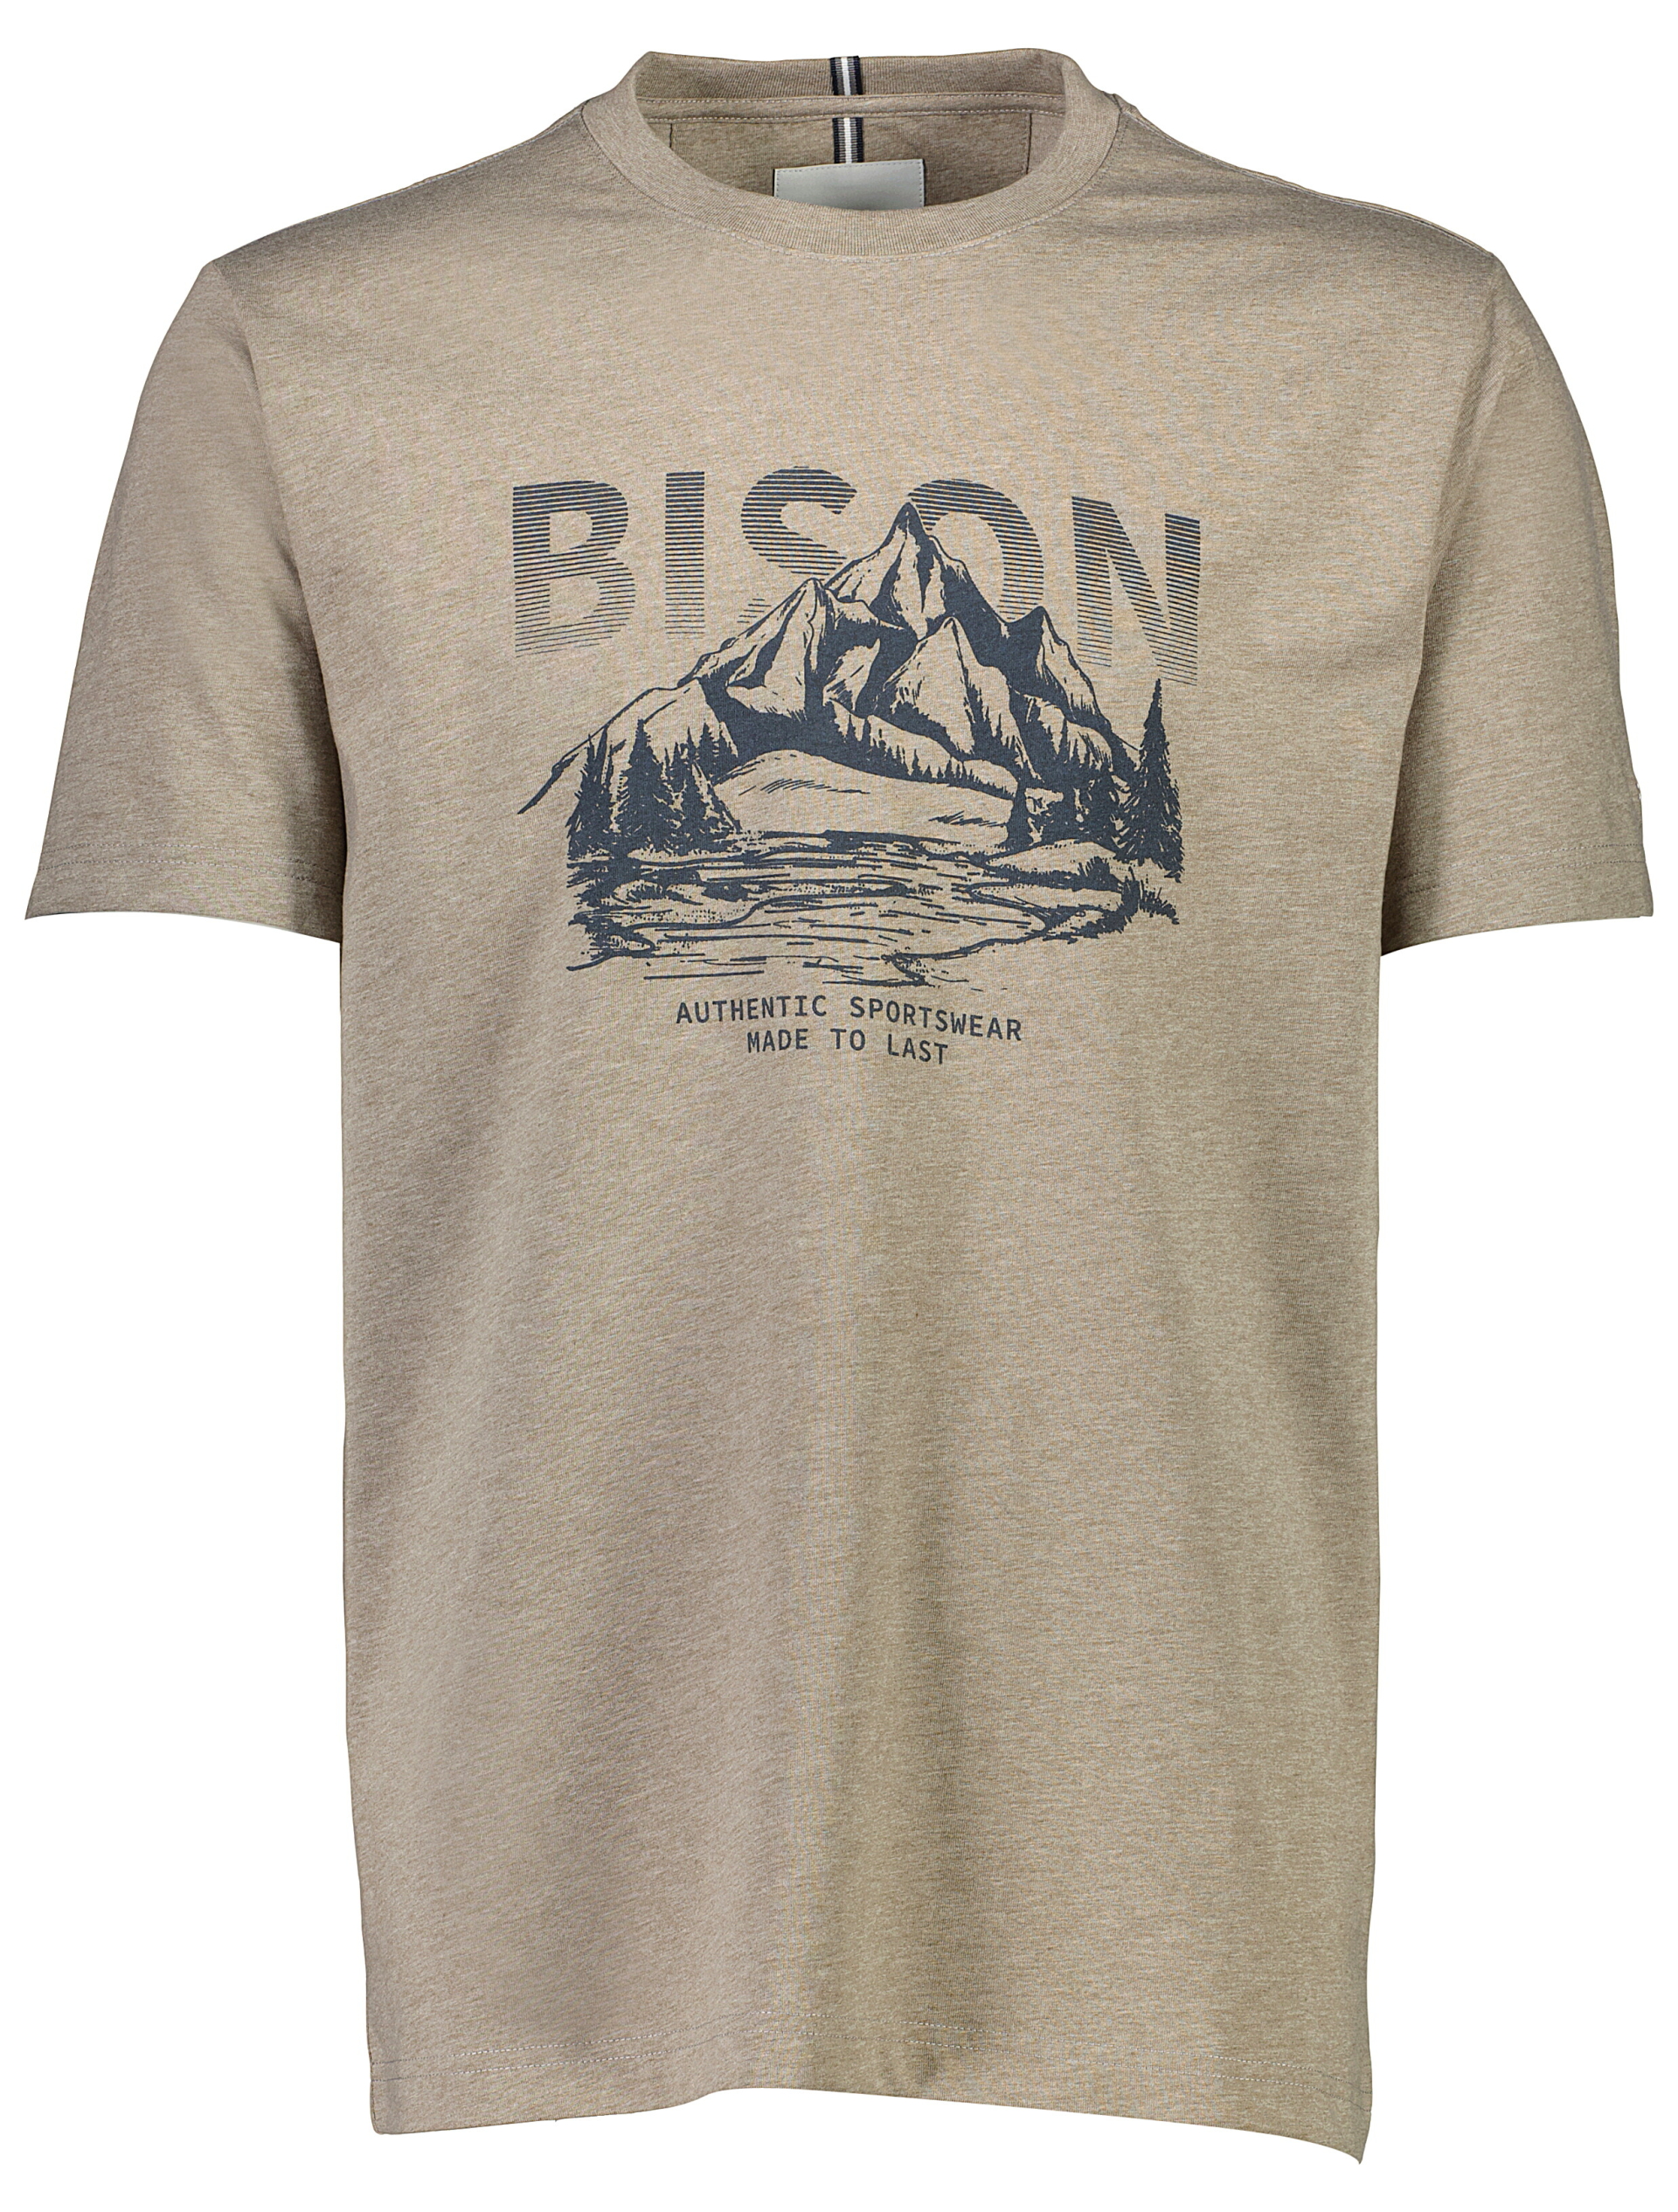 Bison T-shirt sand / sand mel